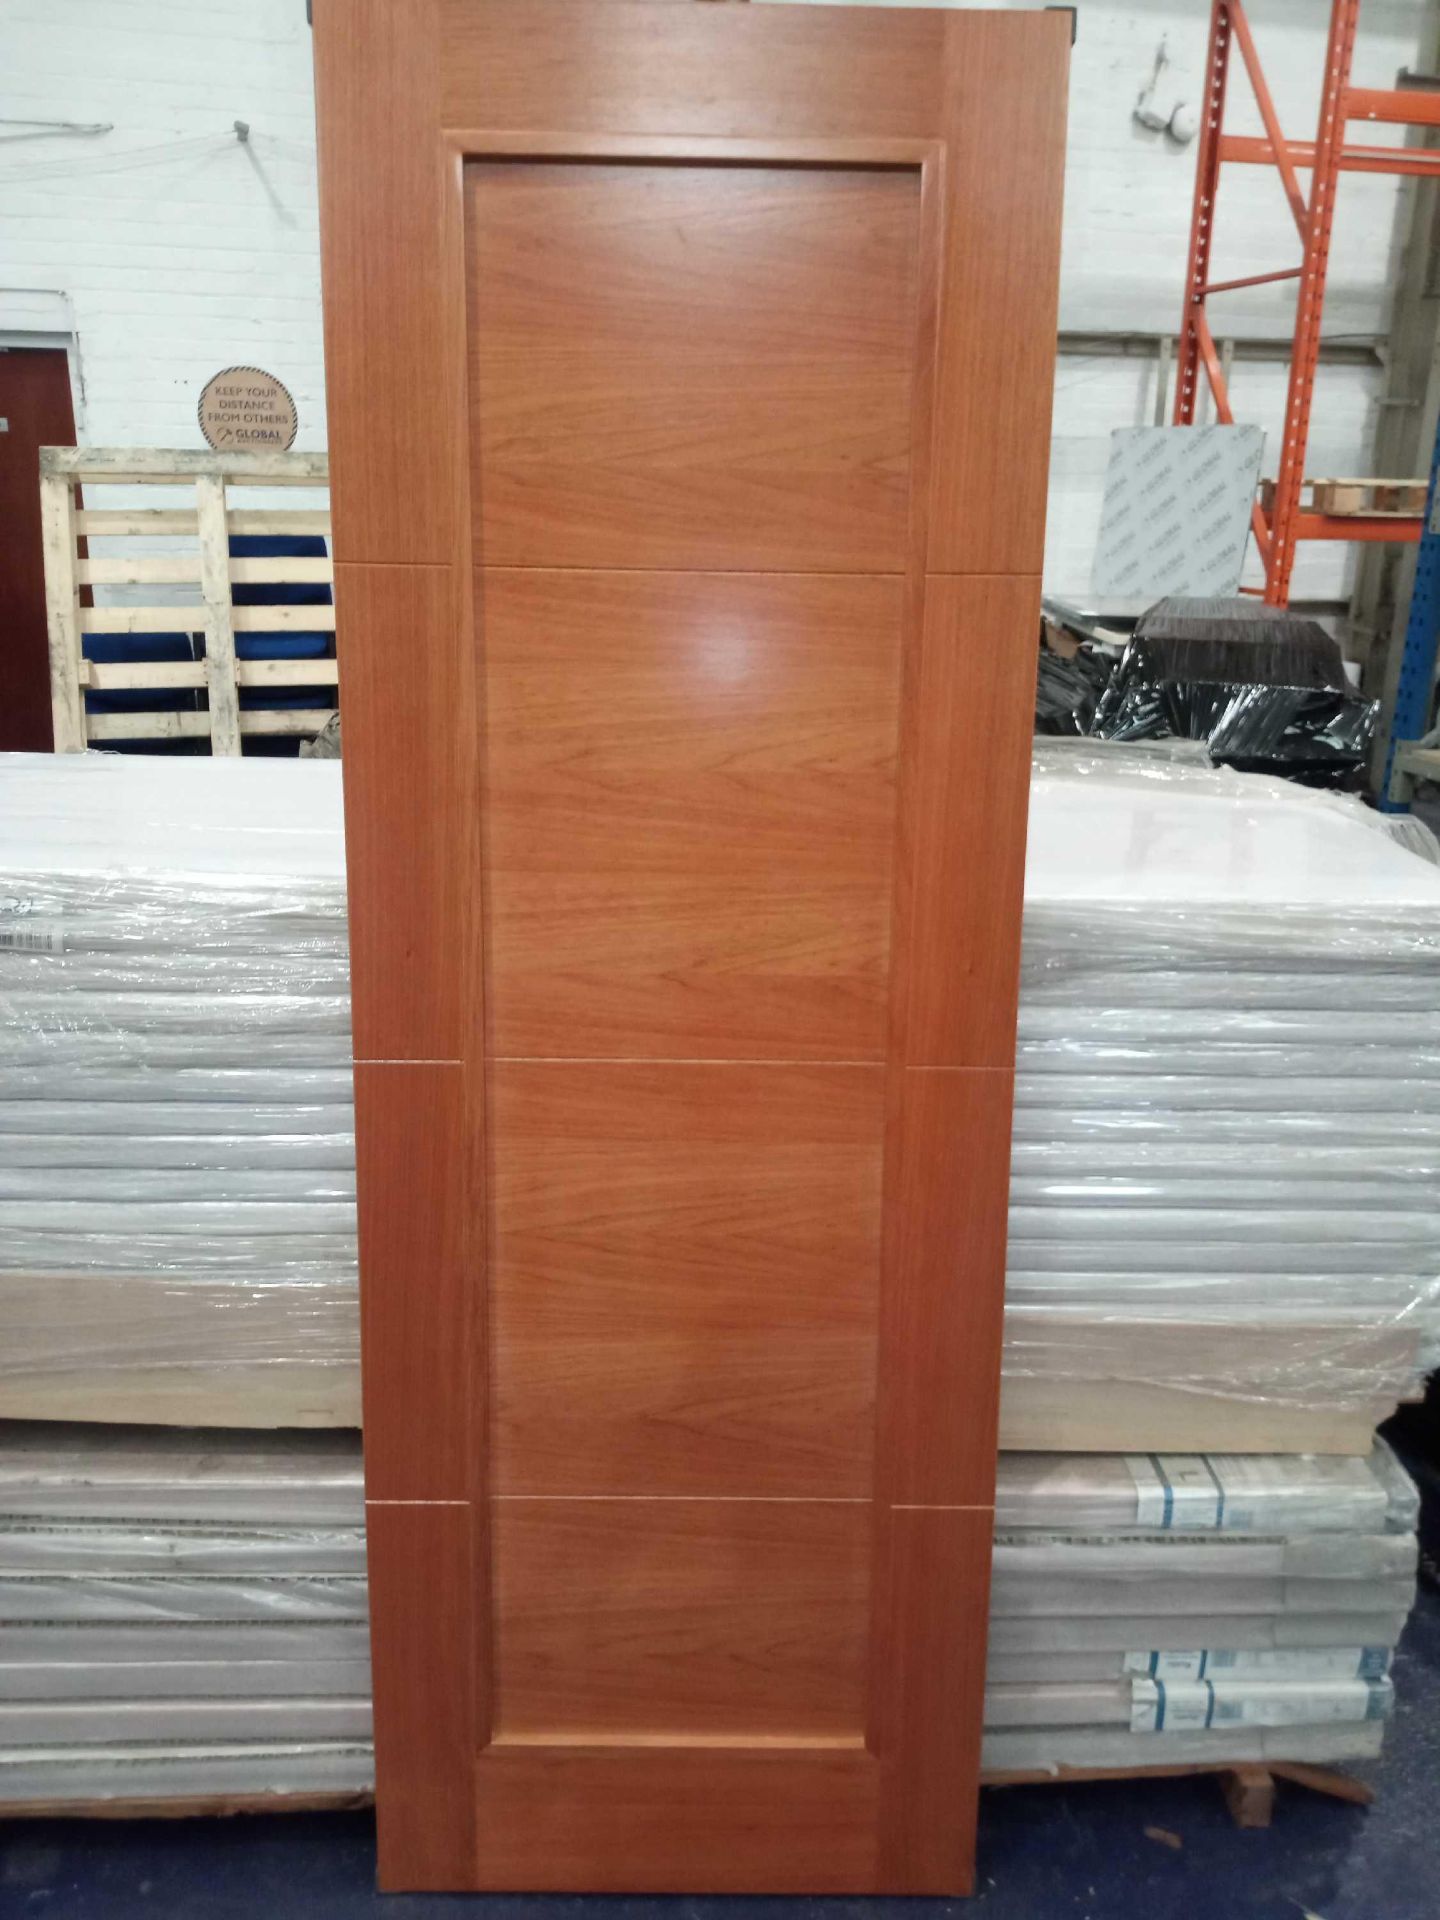 Rrp £4200 Brand New 4 Panel Solid Cherry Hardwood Doors